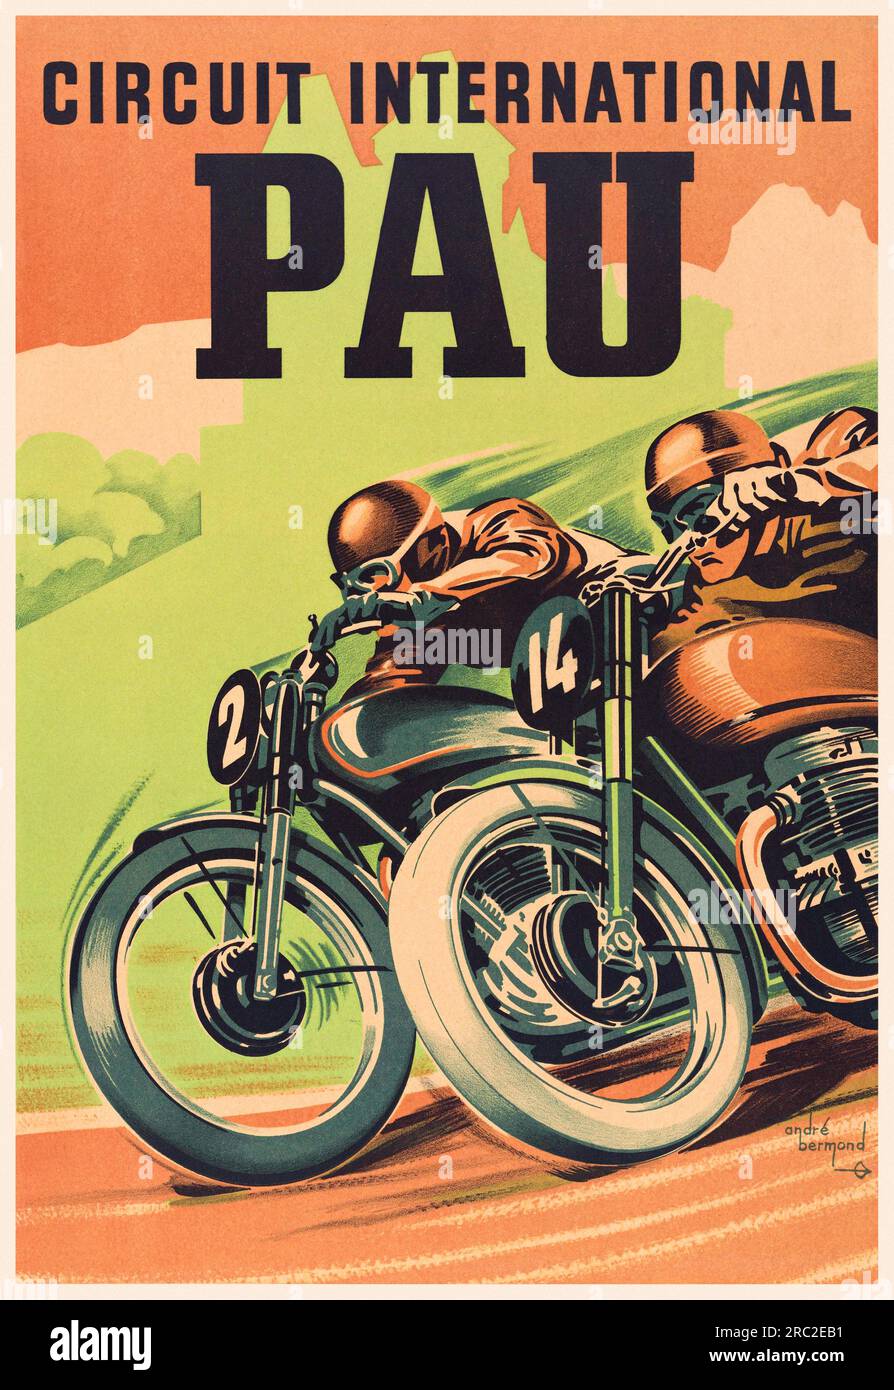 Circuit international de Pau par André Bermond (1903-1983). Affiche publiée en 1951 en France. Banque D'Images